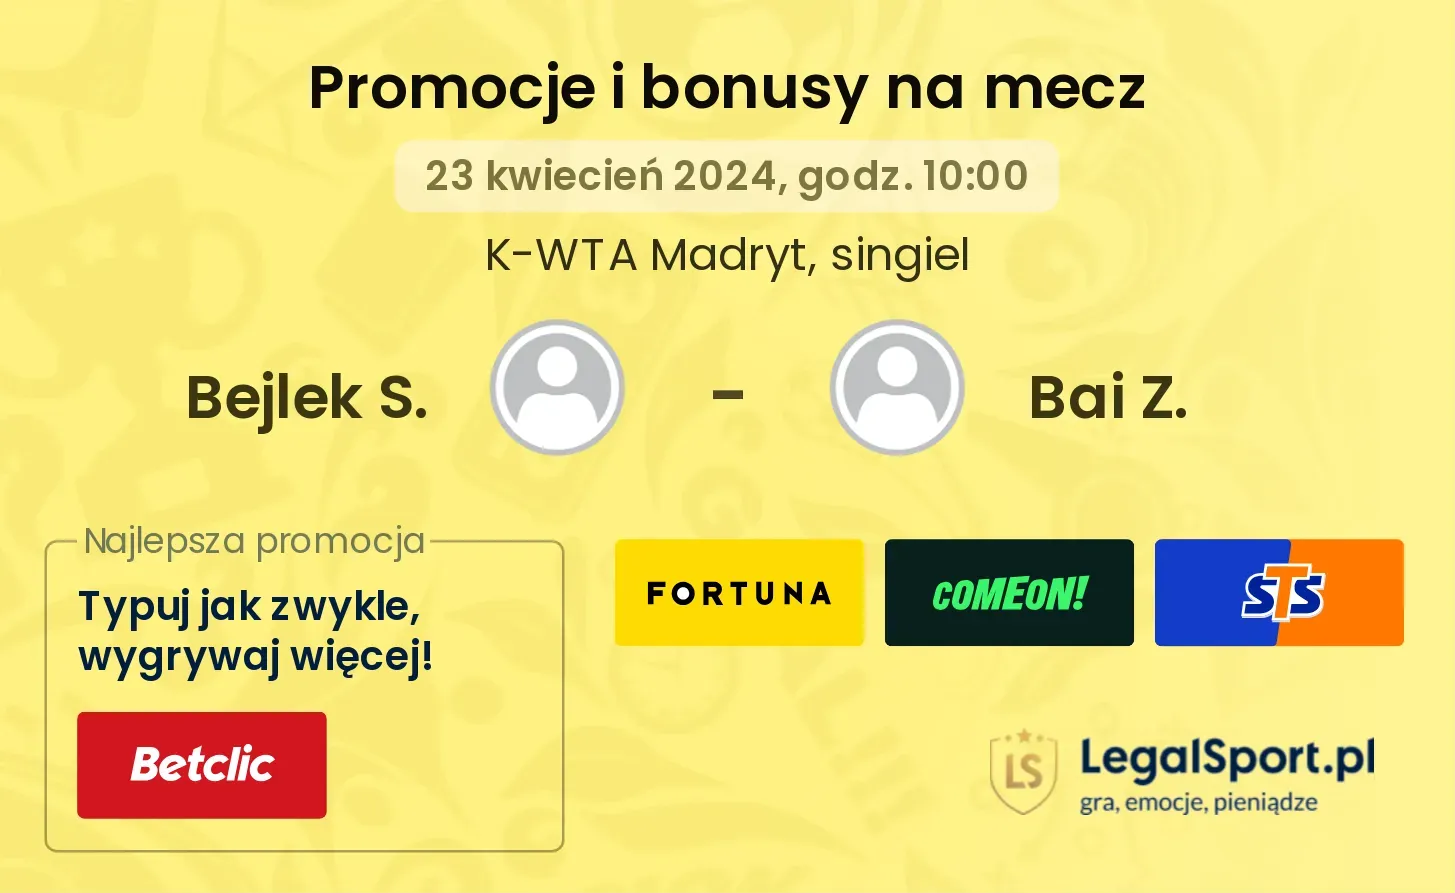 Bejlek S. - Bai Z. promocje bonusy na mecz